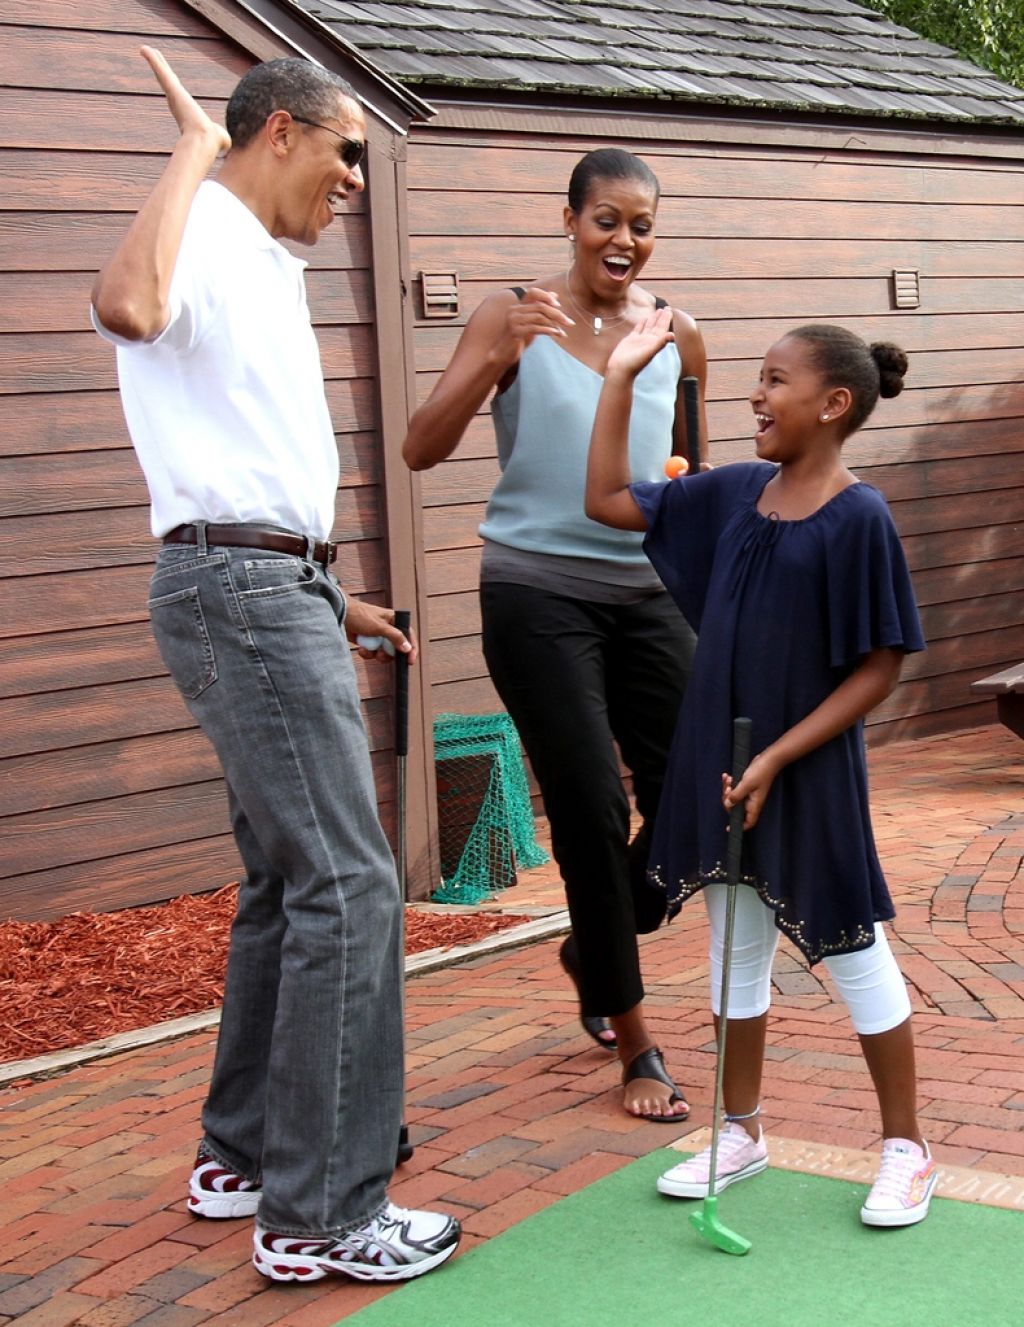 VIDEO: Panika v Beli hiši: zasledoval Obamovi hčerki